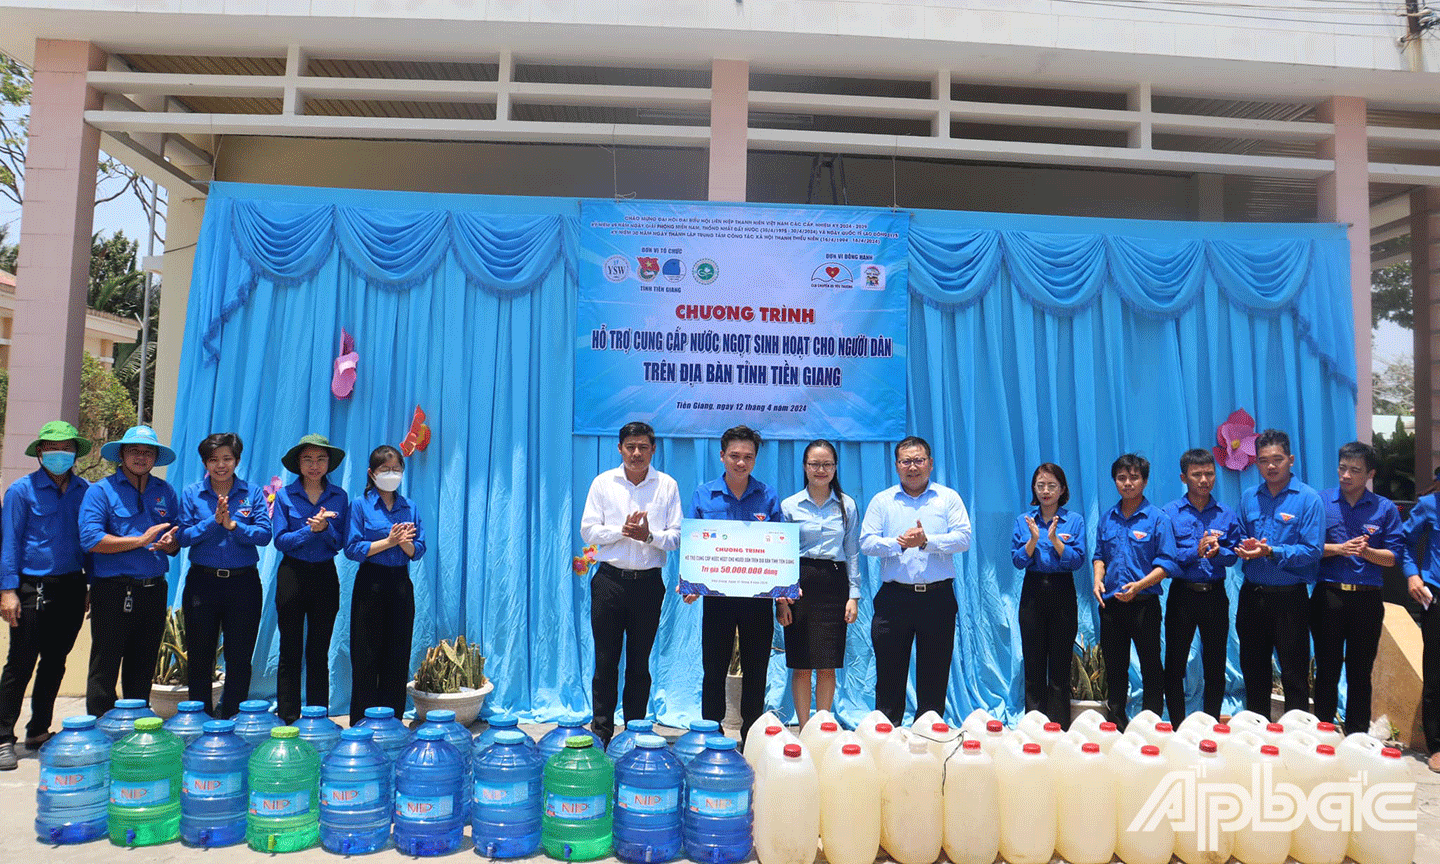 Trung ương Đoàn trao công trình cung cấp nước ngọt  cho người dân trên địa bàn tỉnh Tiền Giang 